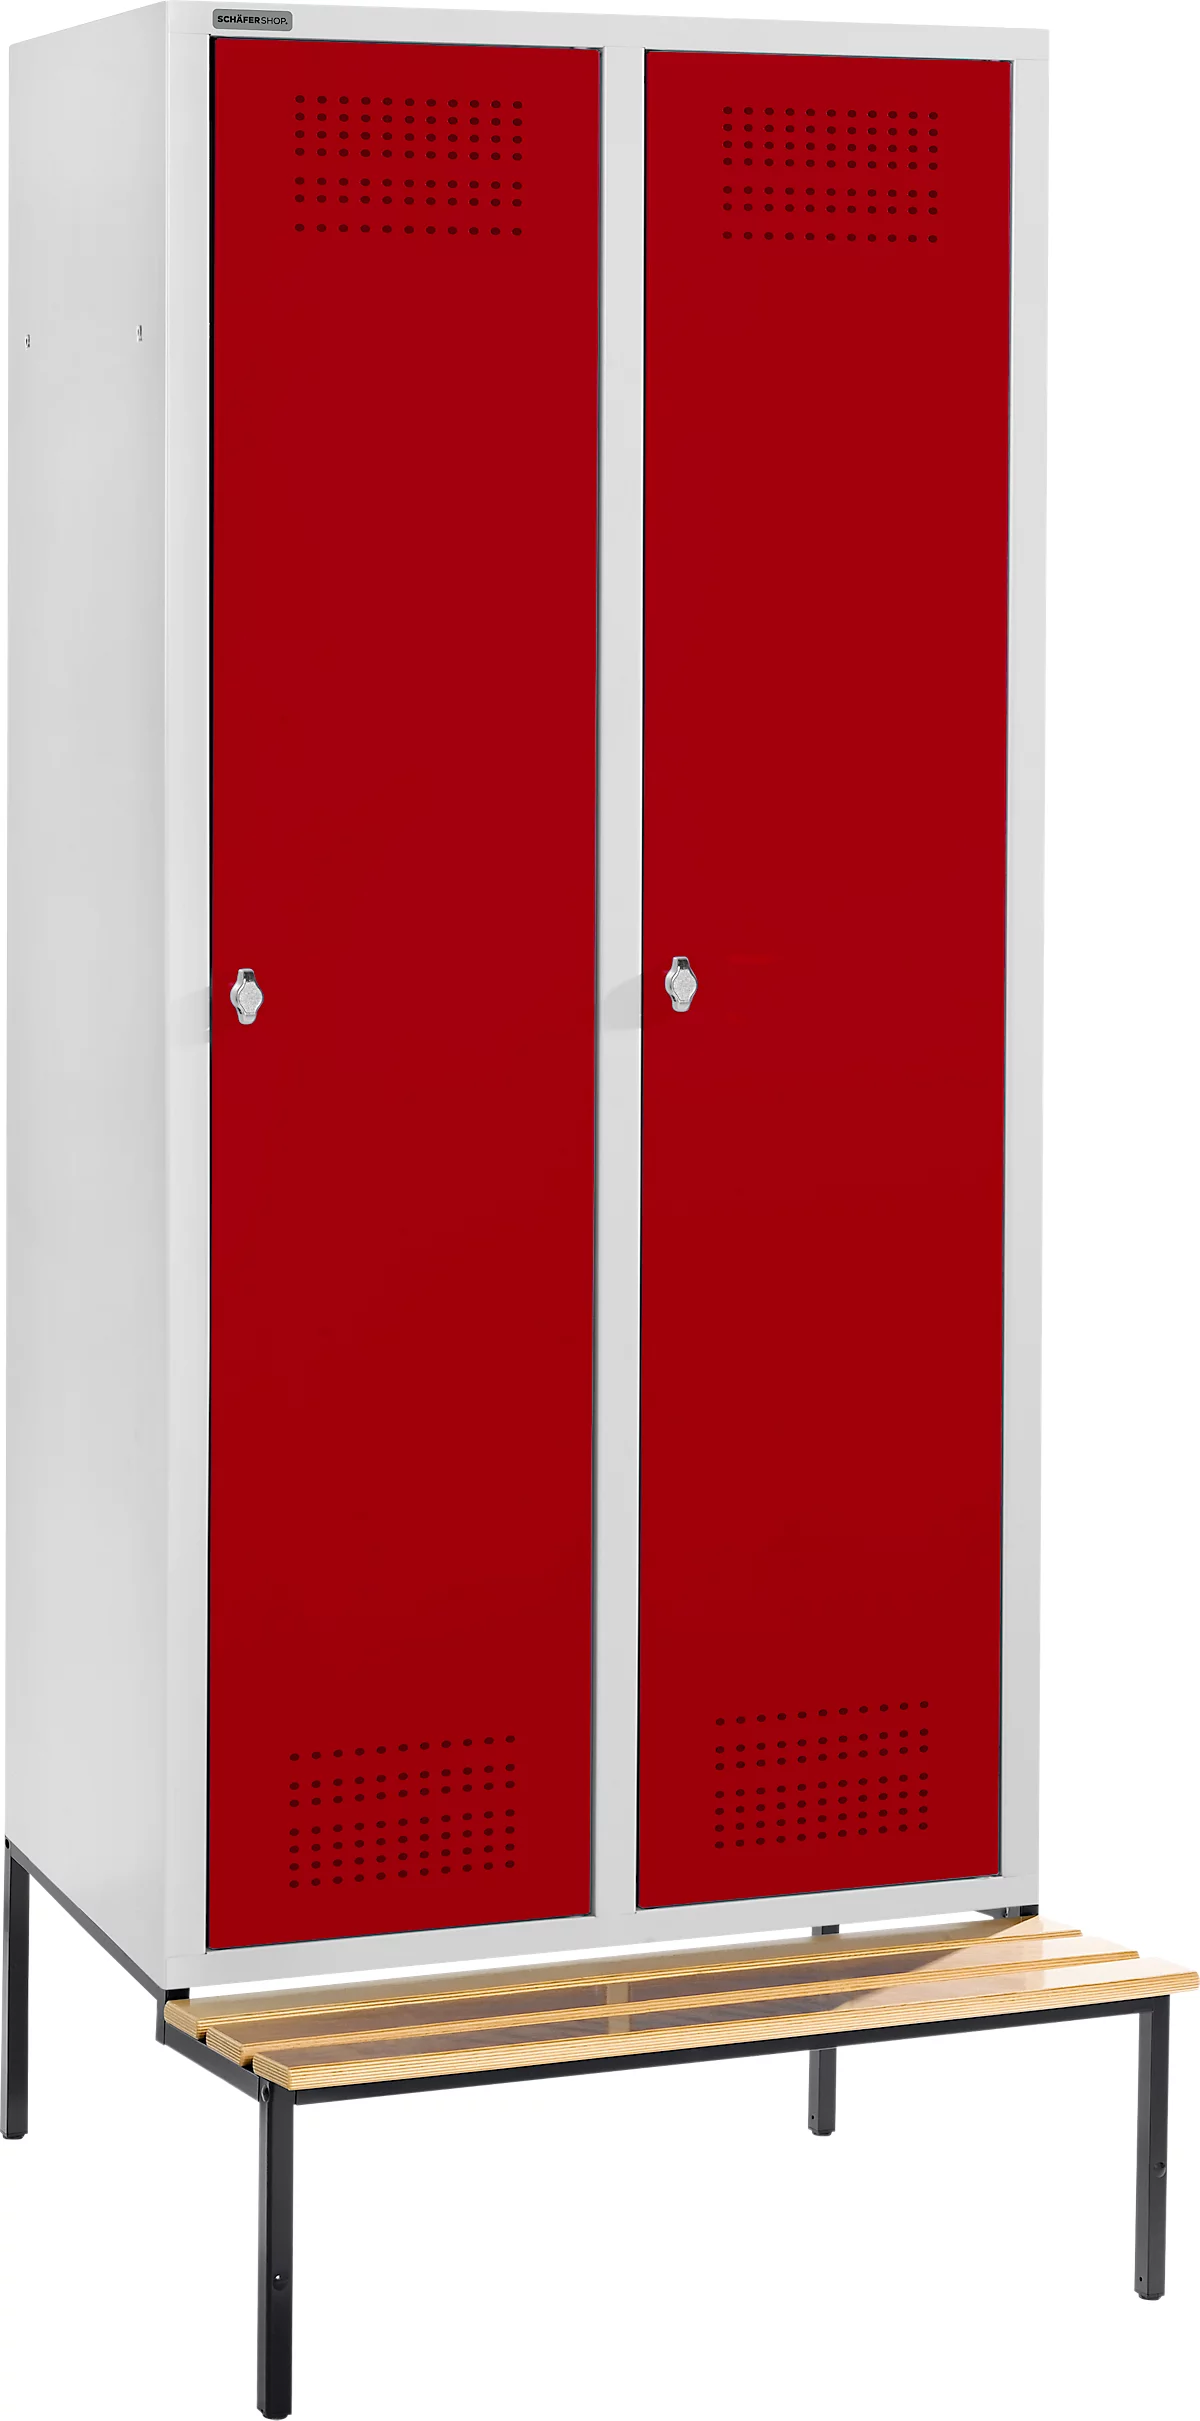 Schäfer Shop Genius Taquilla con banco, 2 compartimentos, anchura compartimento 400 mm, cierre de pasador giratorio de seguridad, gris luminoso/rojo rubí